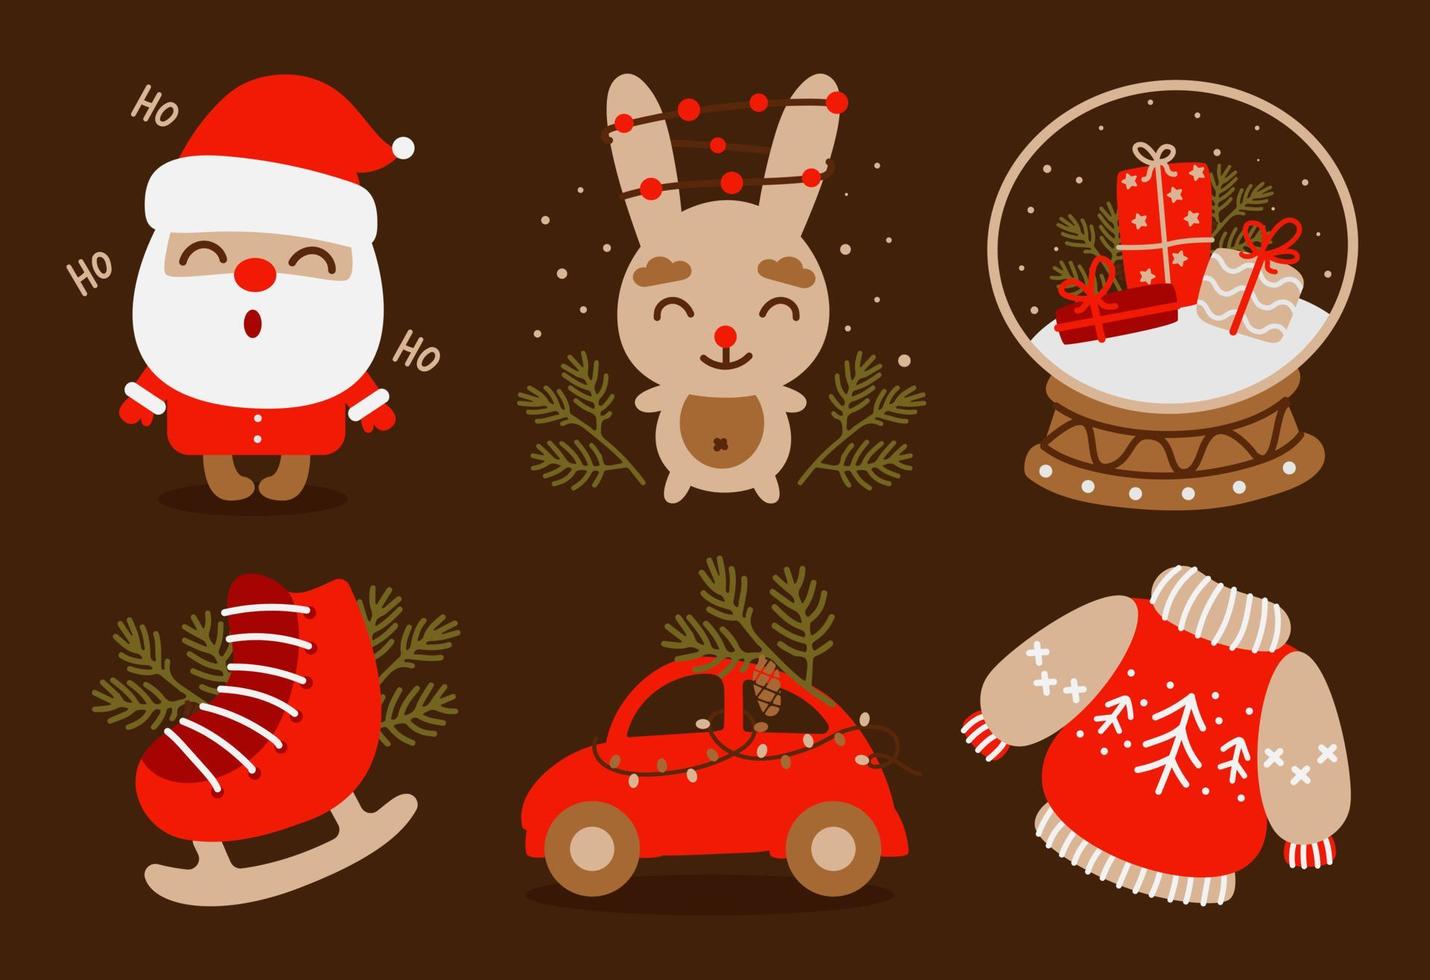 Kerstmis en nieuw jaar reeks met de kerstman claus, auto, sneeuw wereldbol, ijs schaatsen, konijn en andere decor elementen. ontwerp voor afdrukken, ansichtkaarten, affiches. vector illustratie.